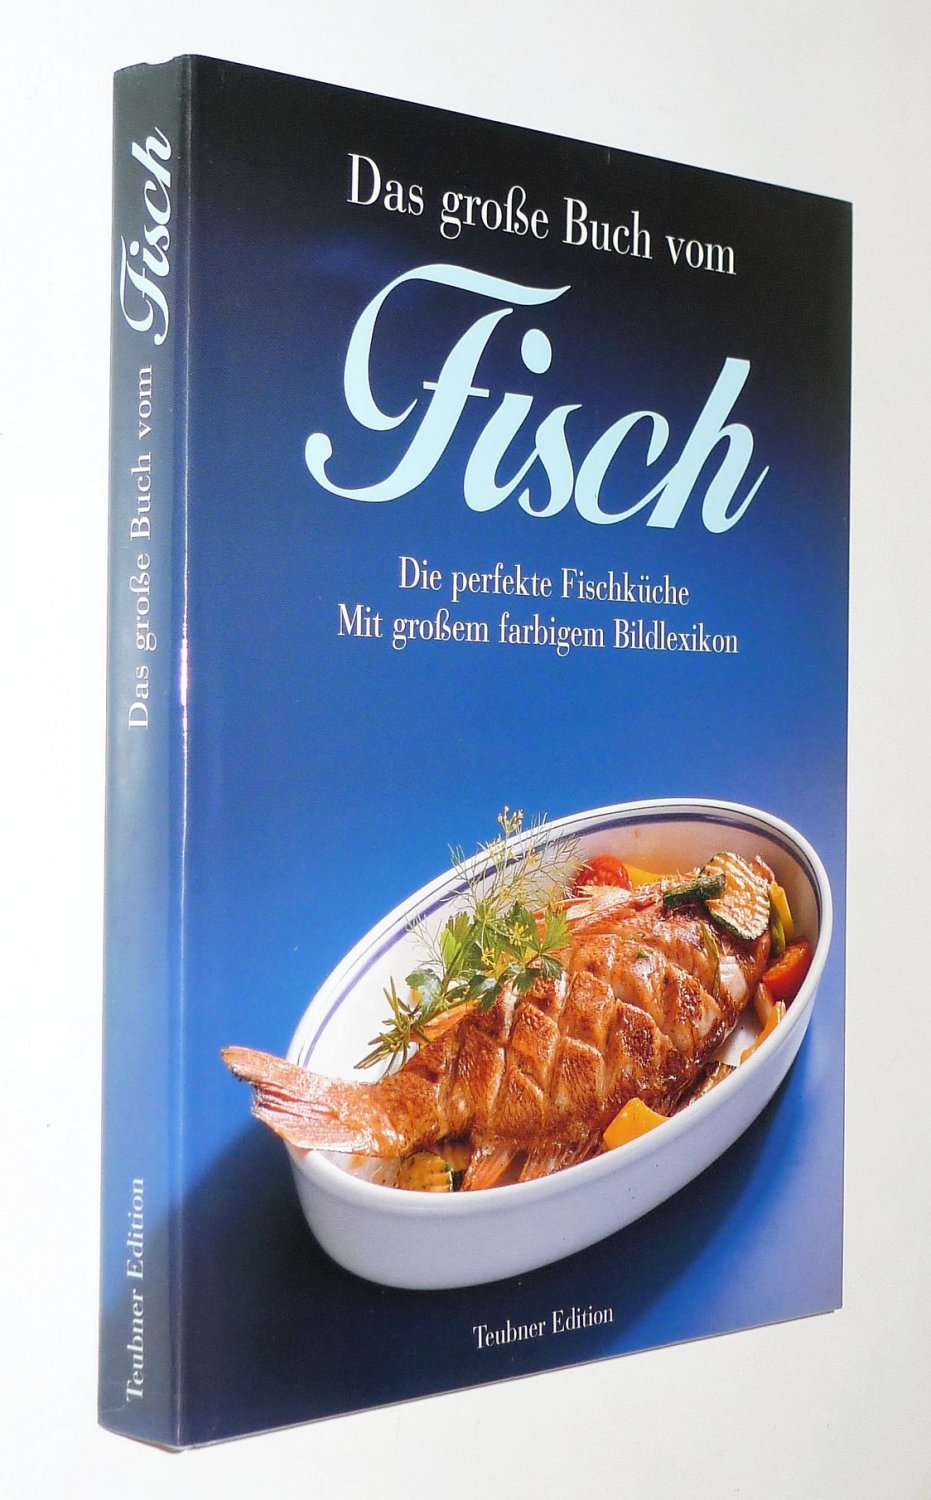 TEUBNER Edition Hardcover im Schuber Das große Buch vom Fisch